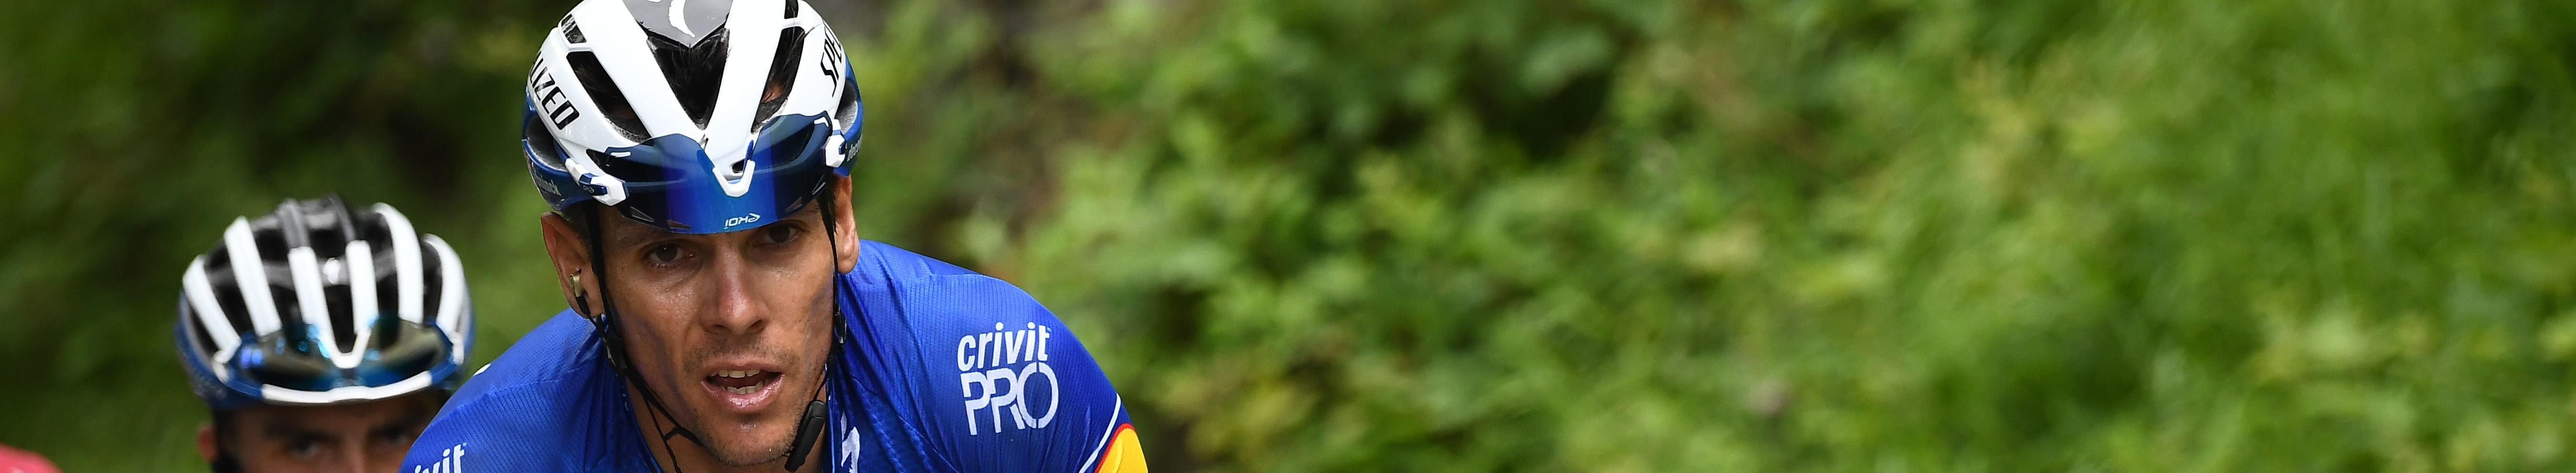 Vuelta 2019, tappa 19: arrivo in leggera salita, Gilbert sogna il tris